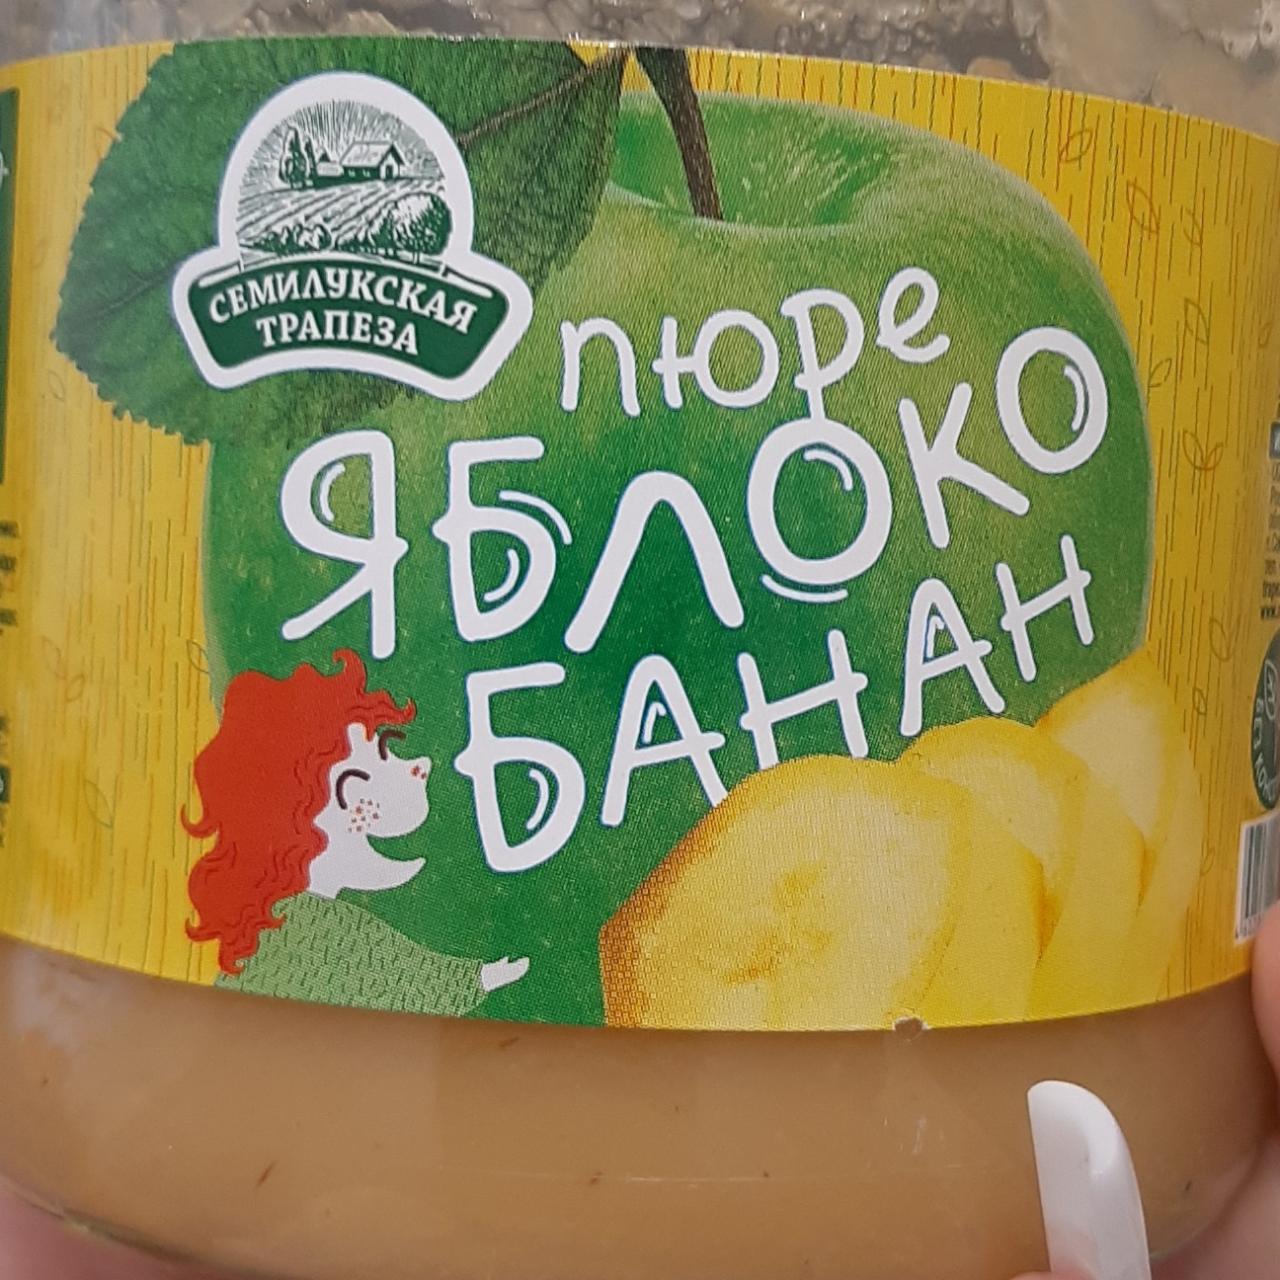 Фото - пюре фруктовое яблоко-банан Семилукская трапеза